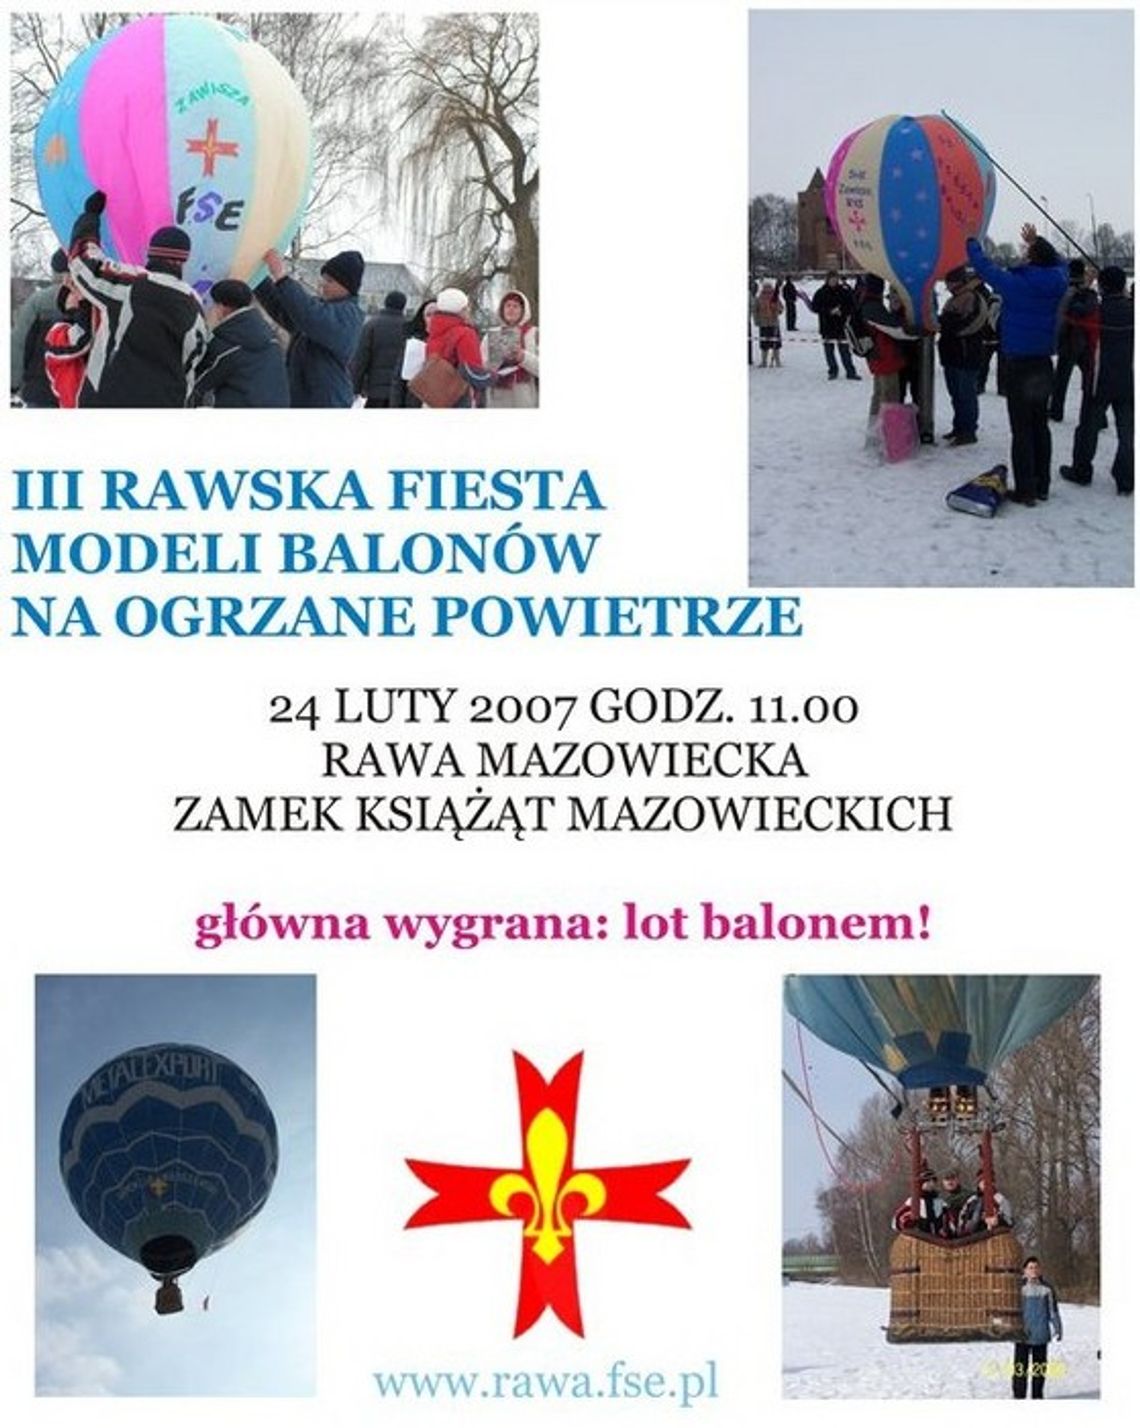 Balonowa fiesta w Rawie Mazowieckiej